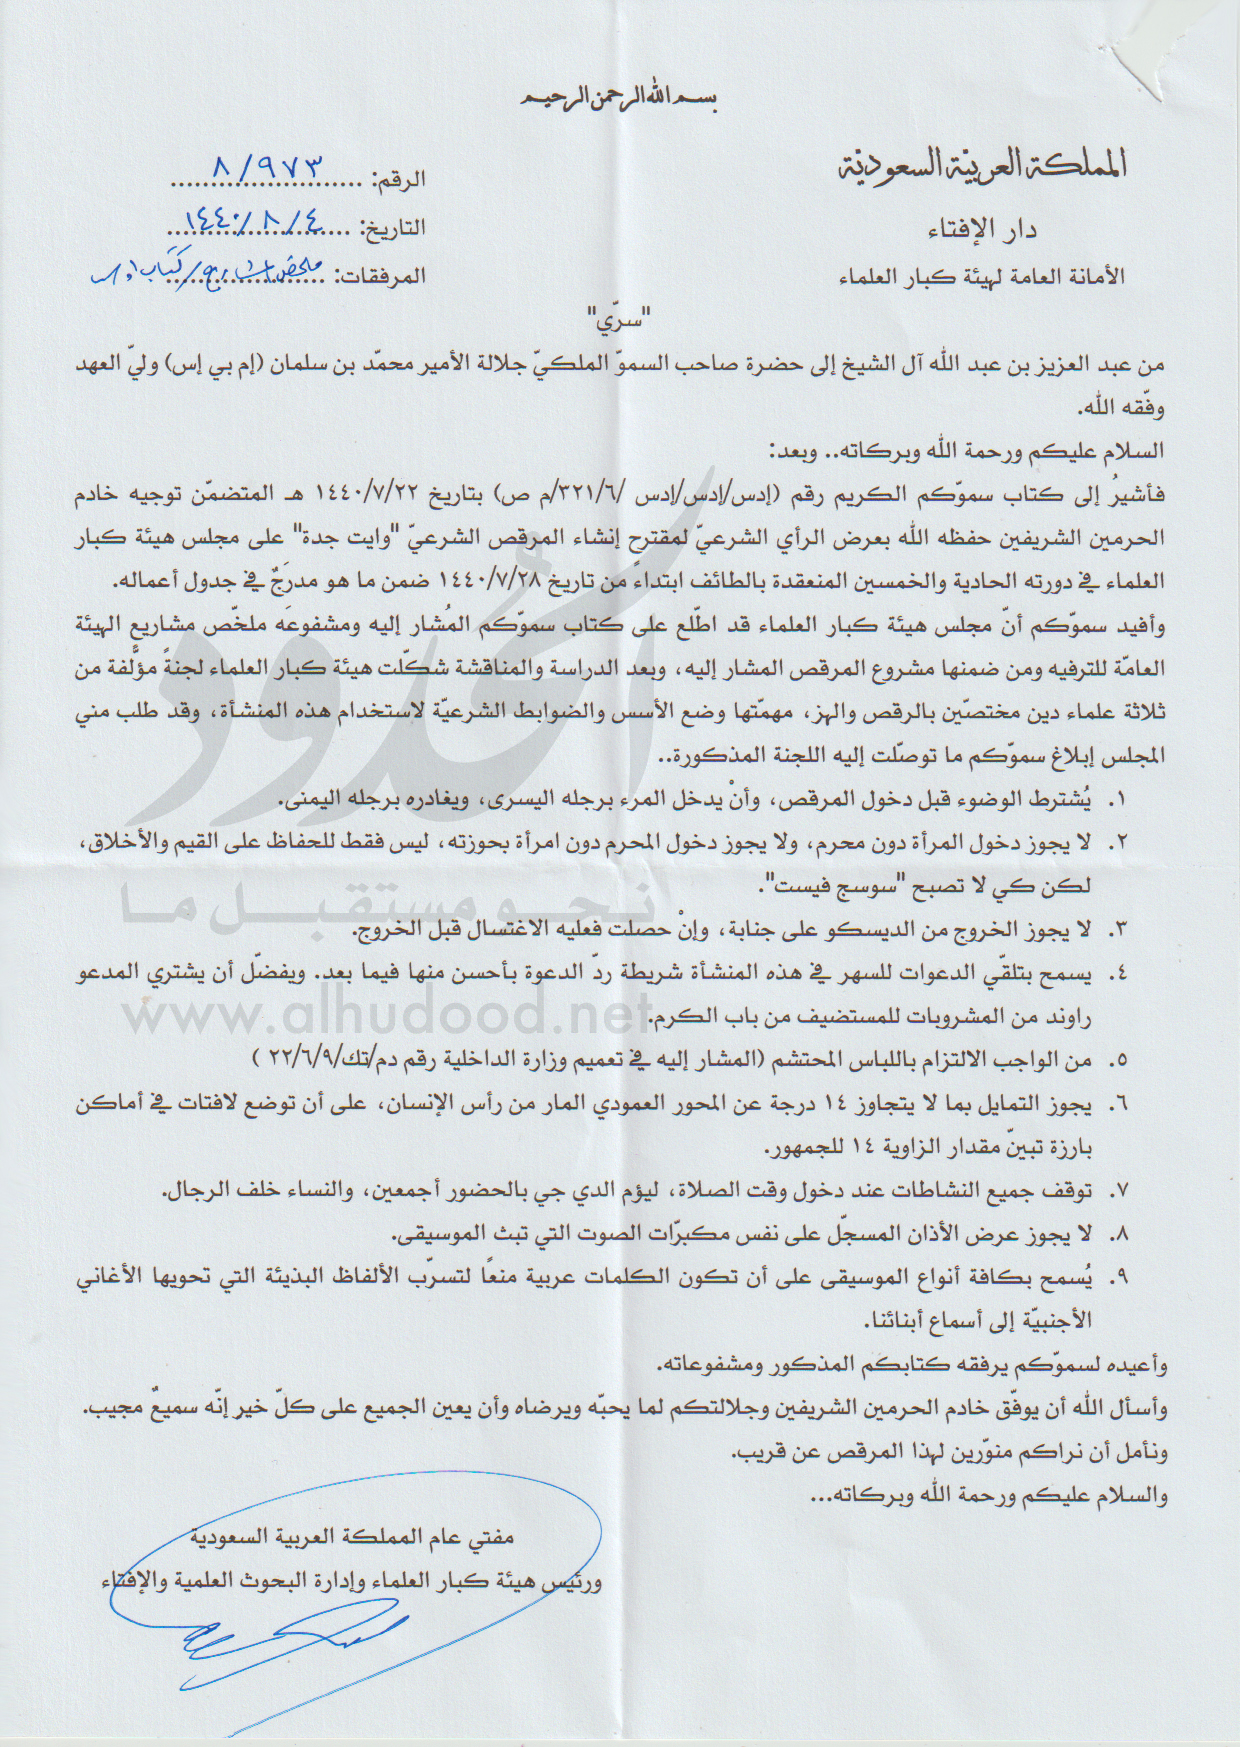 صورة الحدود ليكس: وثيقة مسربة من مكتب مفتي عام السعودية حول أحكام الديسكو الحلال